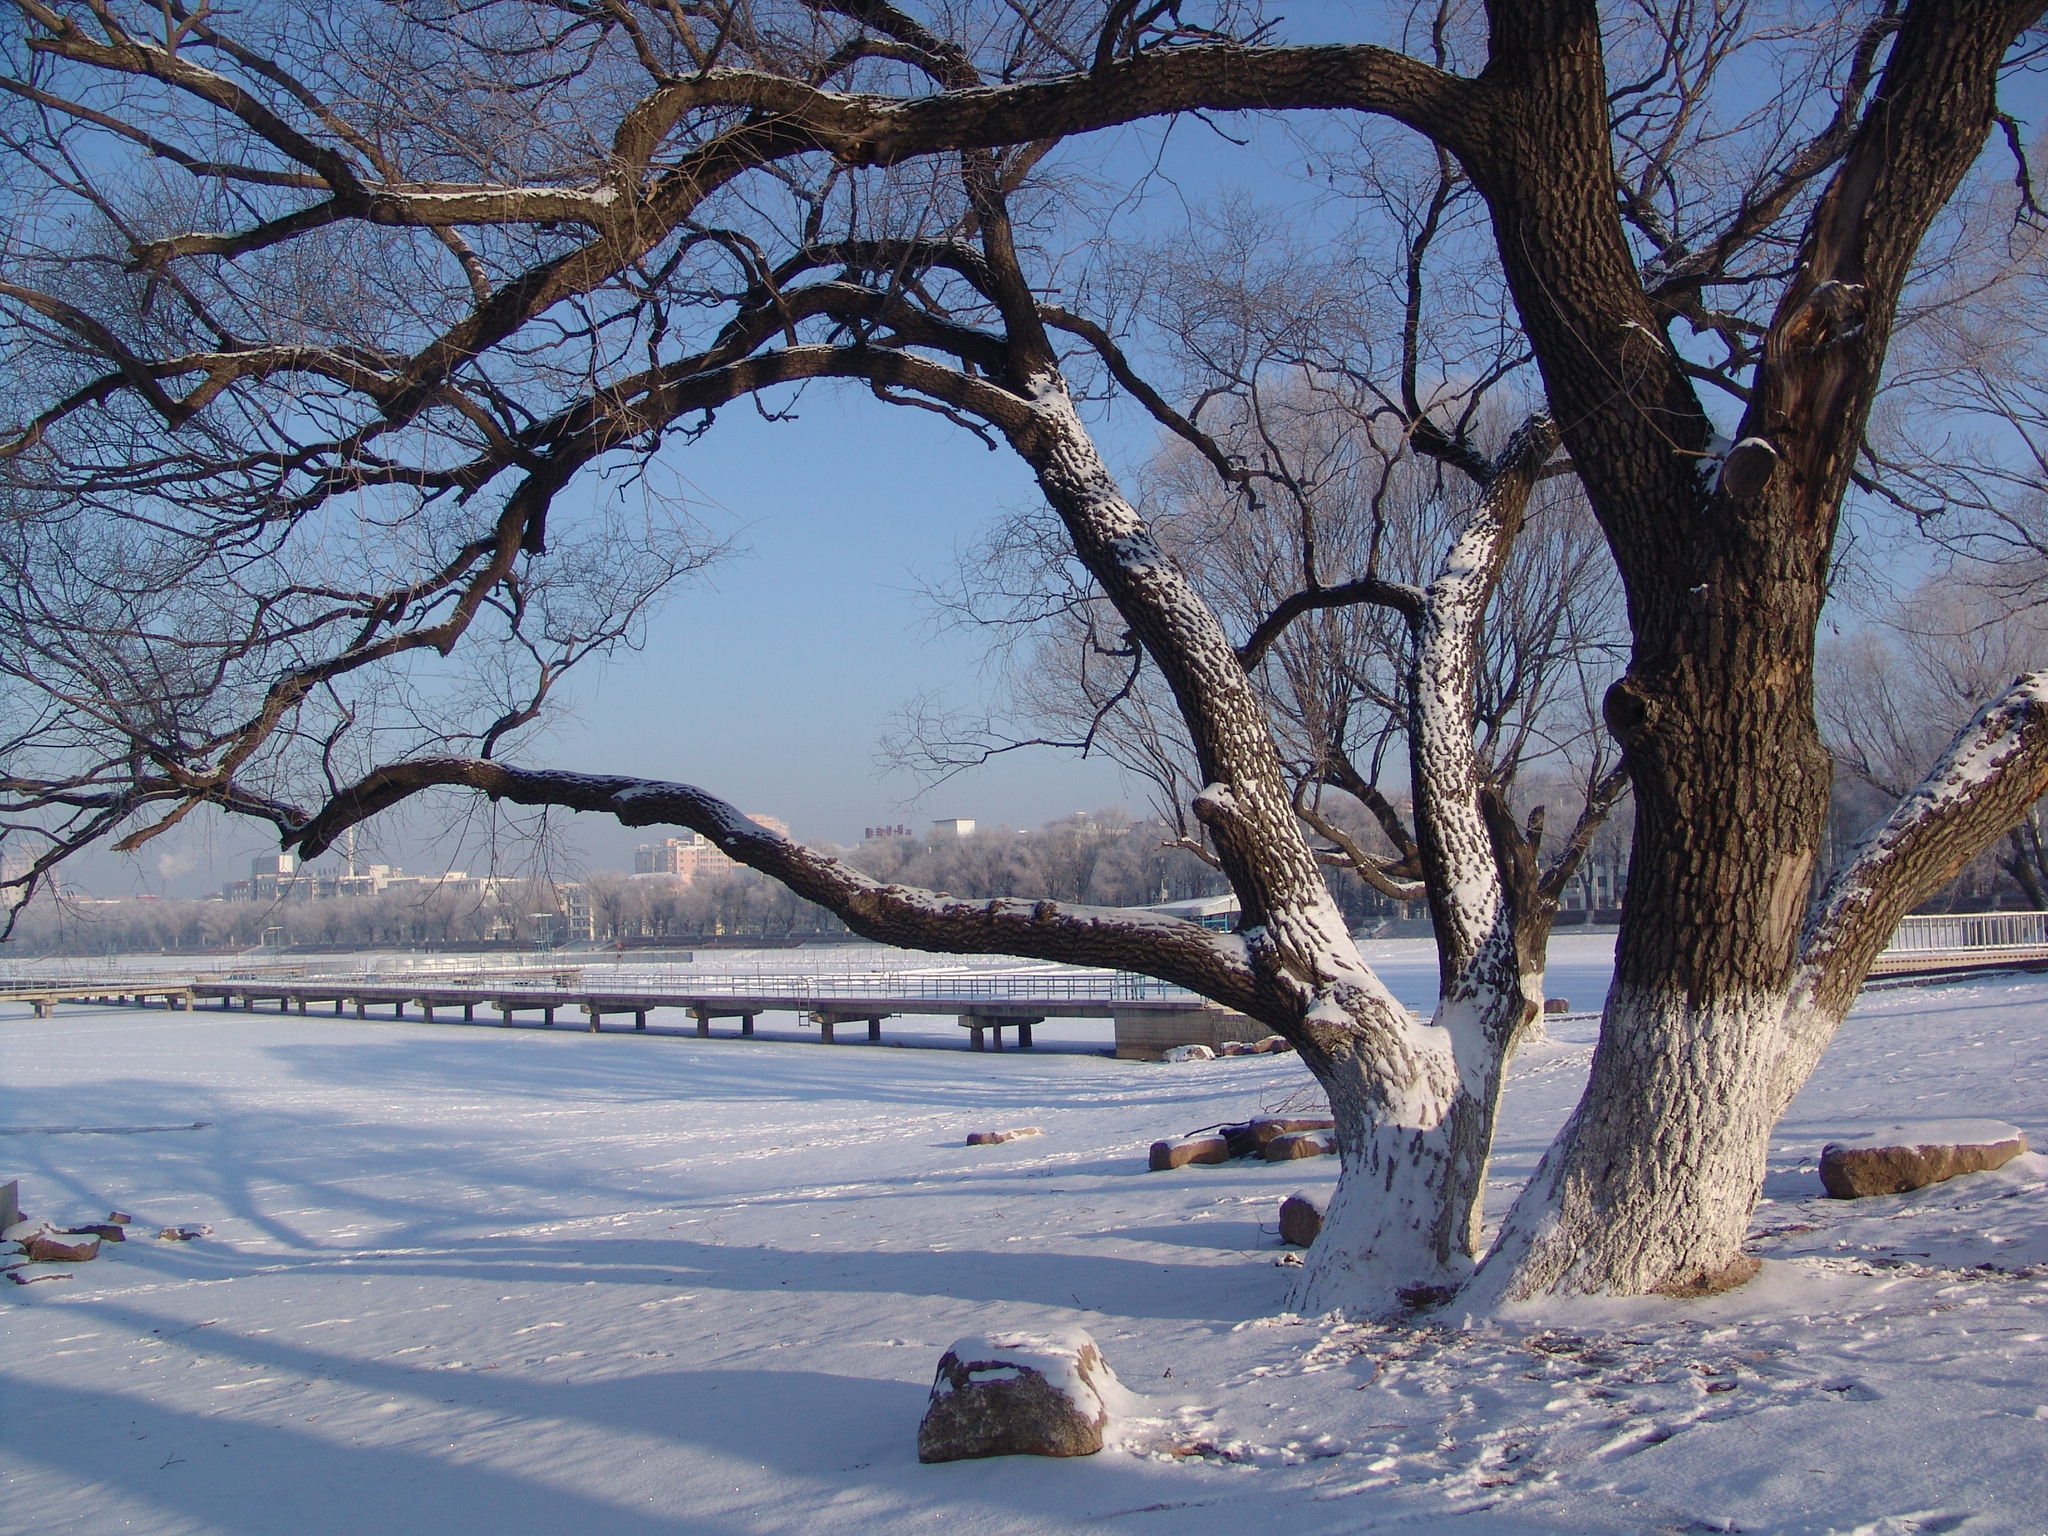 【高清图】公园雪景-中关村在线摄影论坛